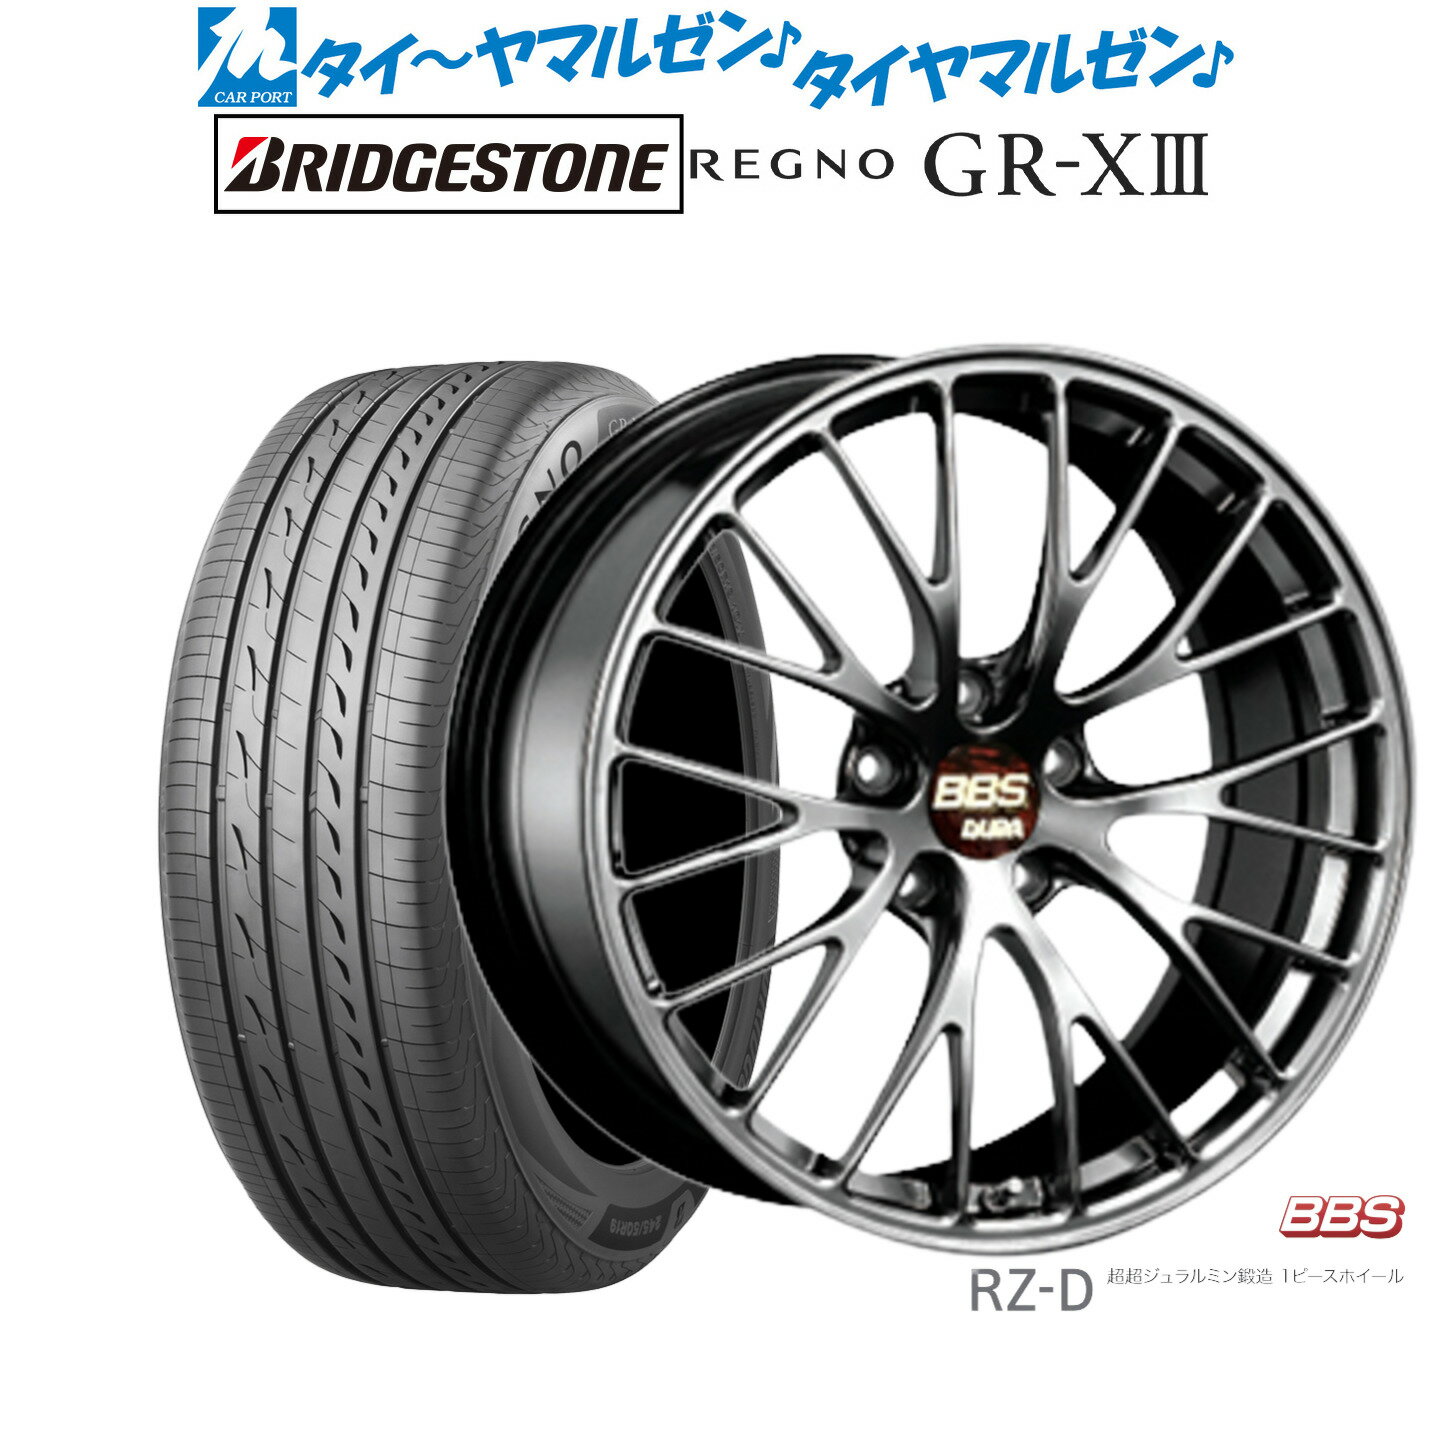 [5/20]割引クーポン配布新品 サマータイヤ ホイール4本セットBBS JAPAN RZ-D19インチ 8.5Jブリヂストン REGNO レグノ GR-XIII(GR-X3)245/45R19